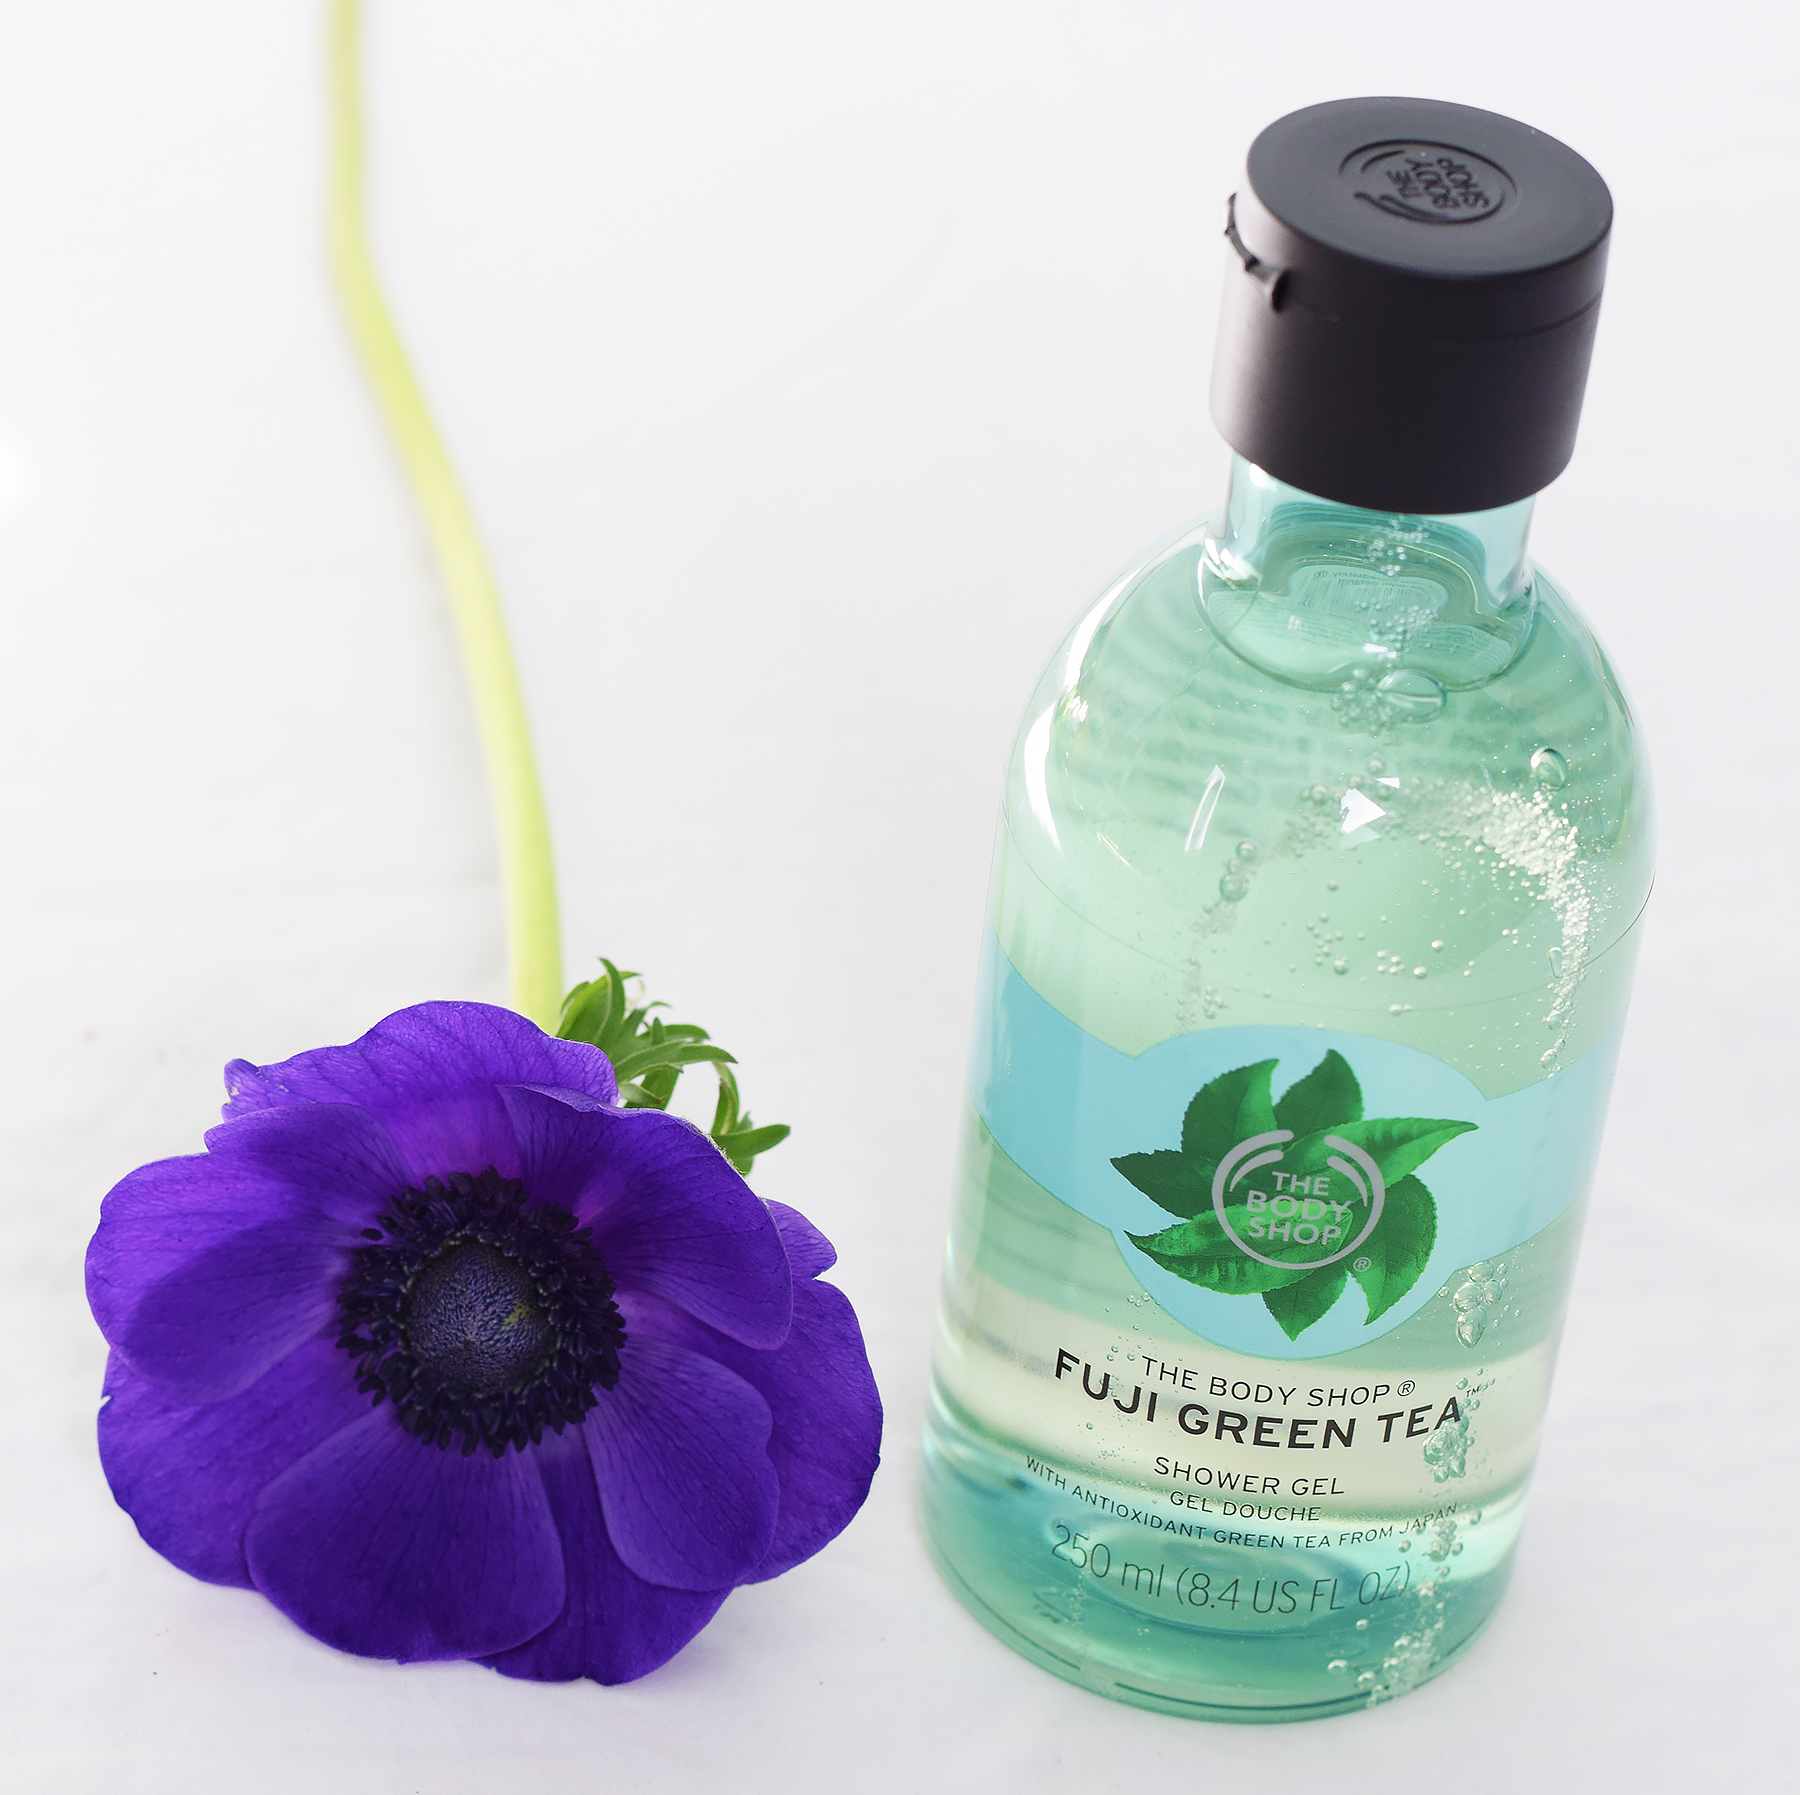 The Body Shop Fuji Green Tea Shower Gel Review